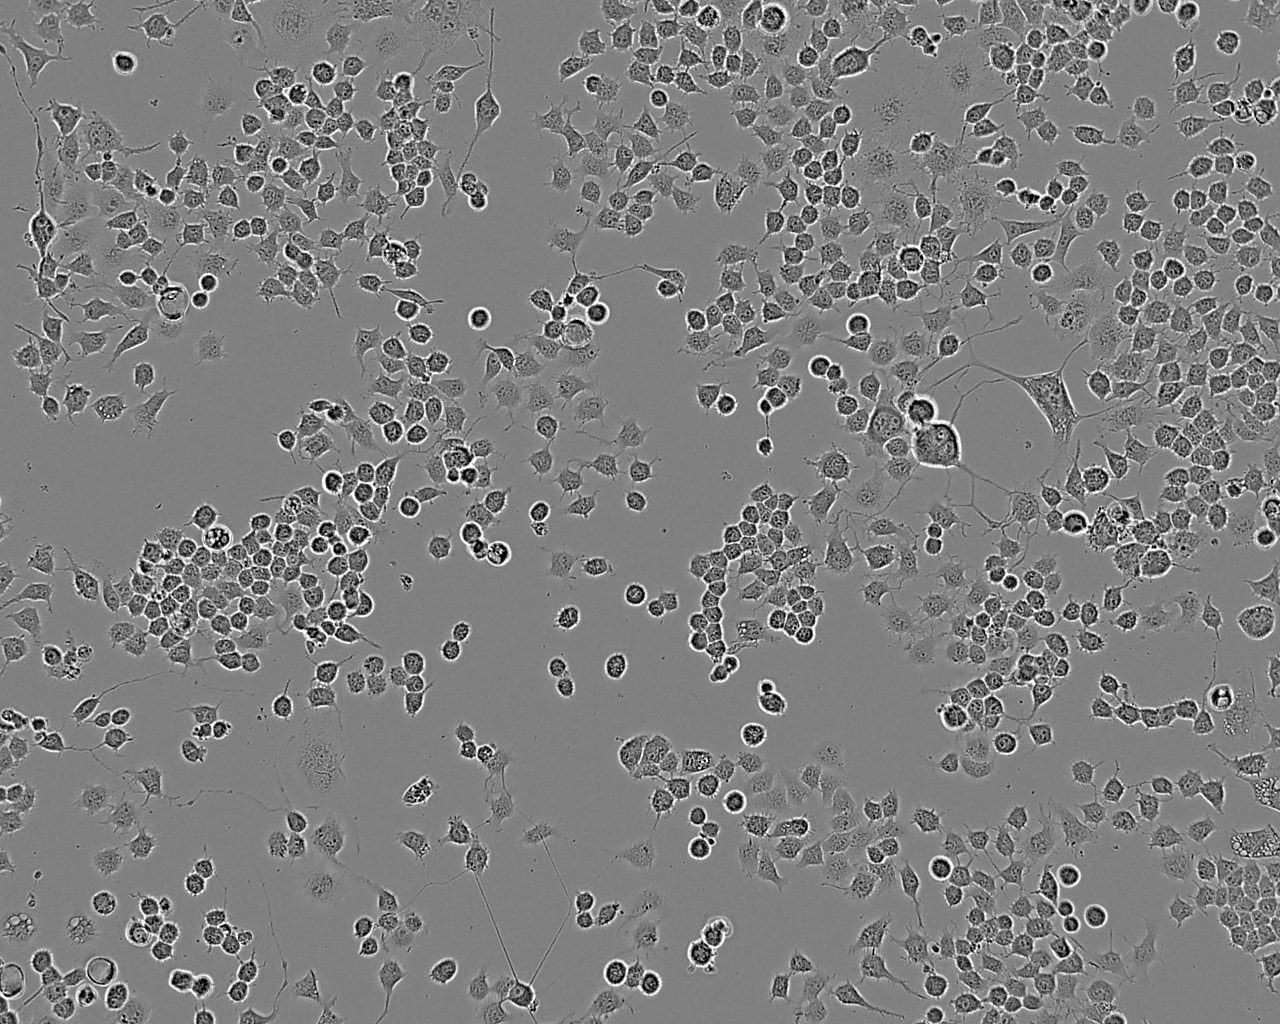 NEC8 epithelioid cells人畸胎瘤细胞系,NEC8 epithelioid cells